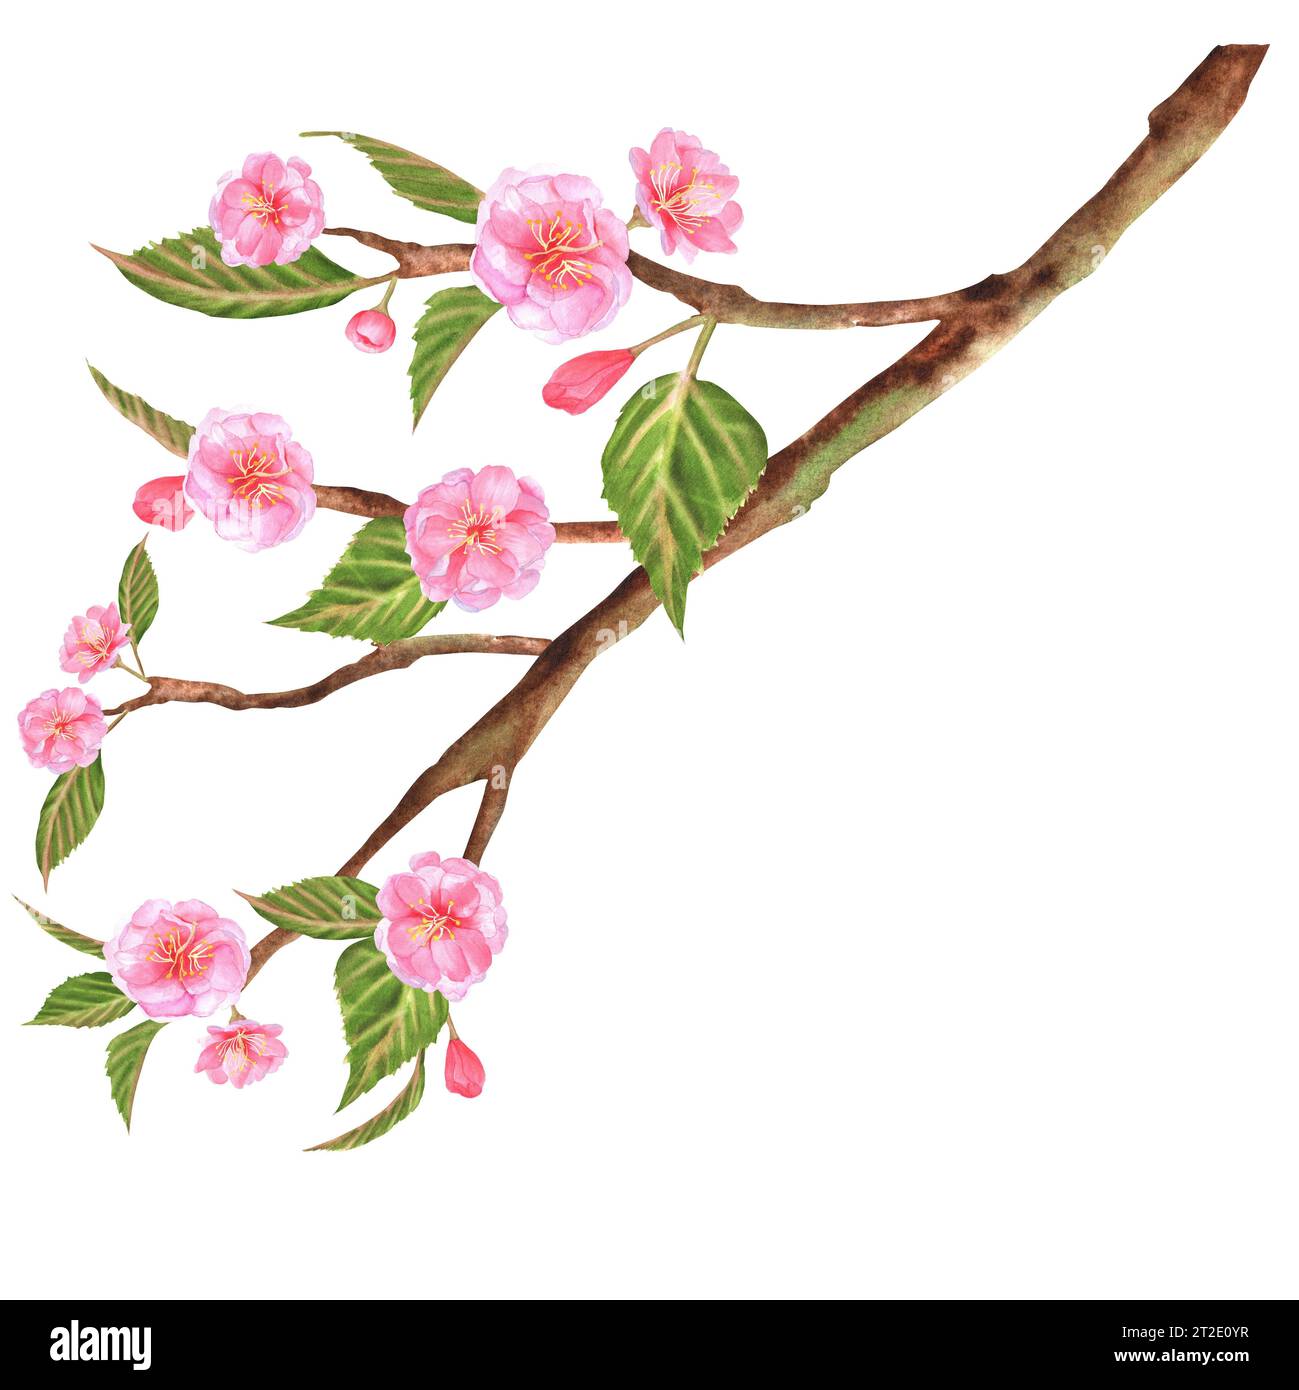 Illustrazione ad acquerello disegnata a mano. Bellissimo ramo sakura (ciliegio) con fiori rosa e foglie verdi Foto Stock